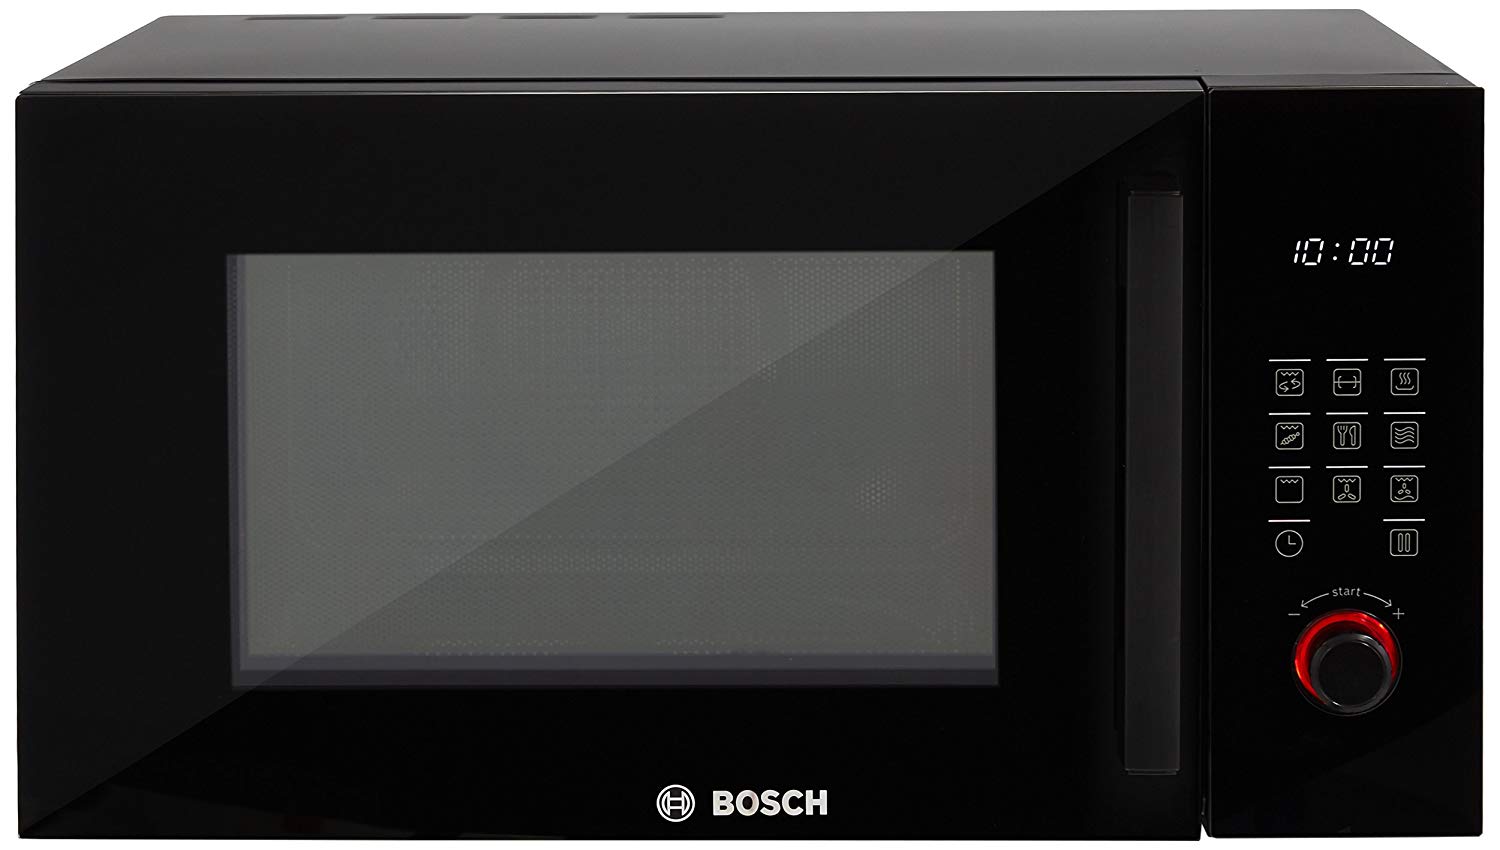 Купить встроенную микроволновую печь bosch. Микроволновая печь встраиваемая Bosch bfl524mb0. Микроволновая печь встраиваемая Bosch bfl623mc3. Микроволновая печь Bosch bel554ms0. Микроволновая печь встраиваемая Bosch bel554ms0.